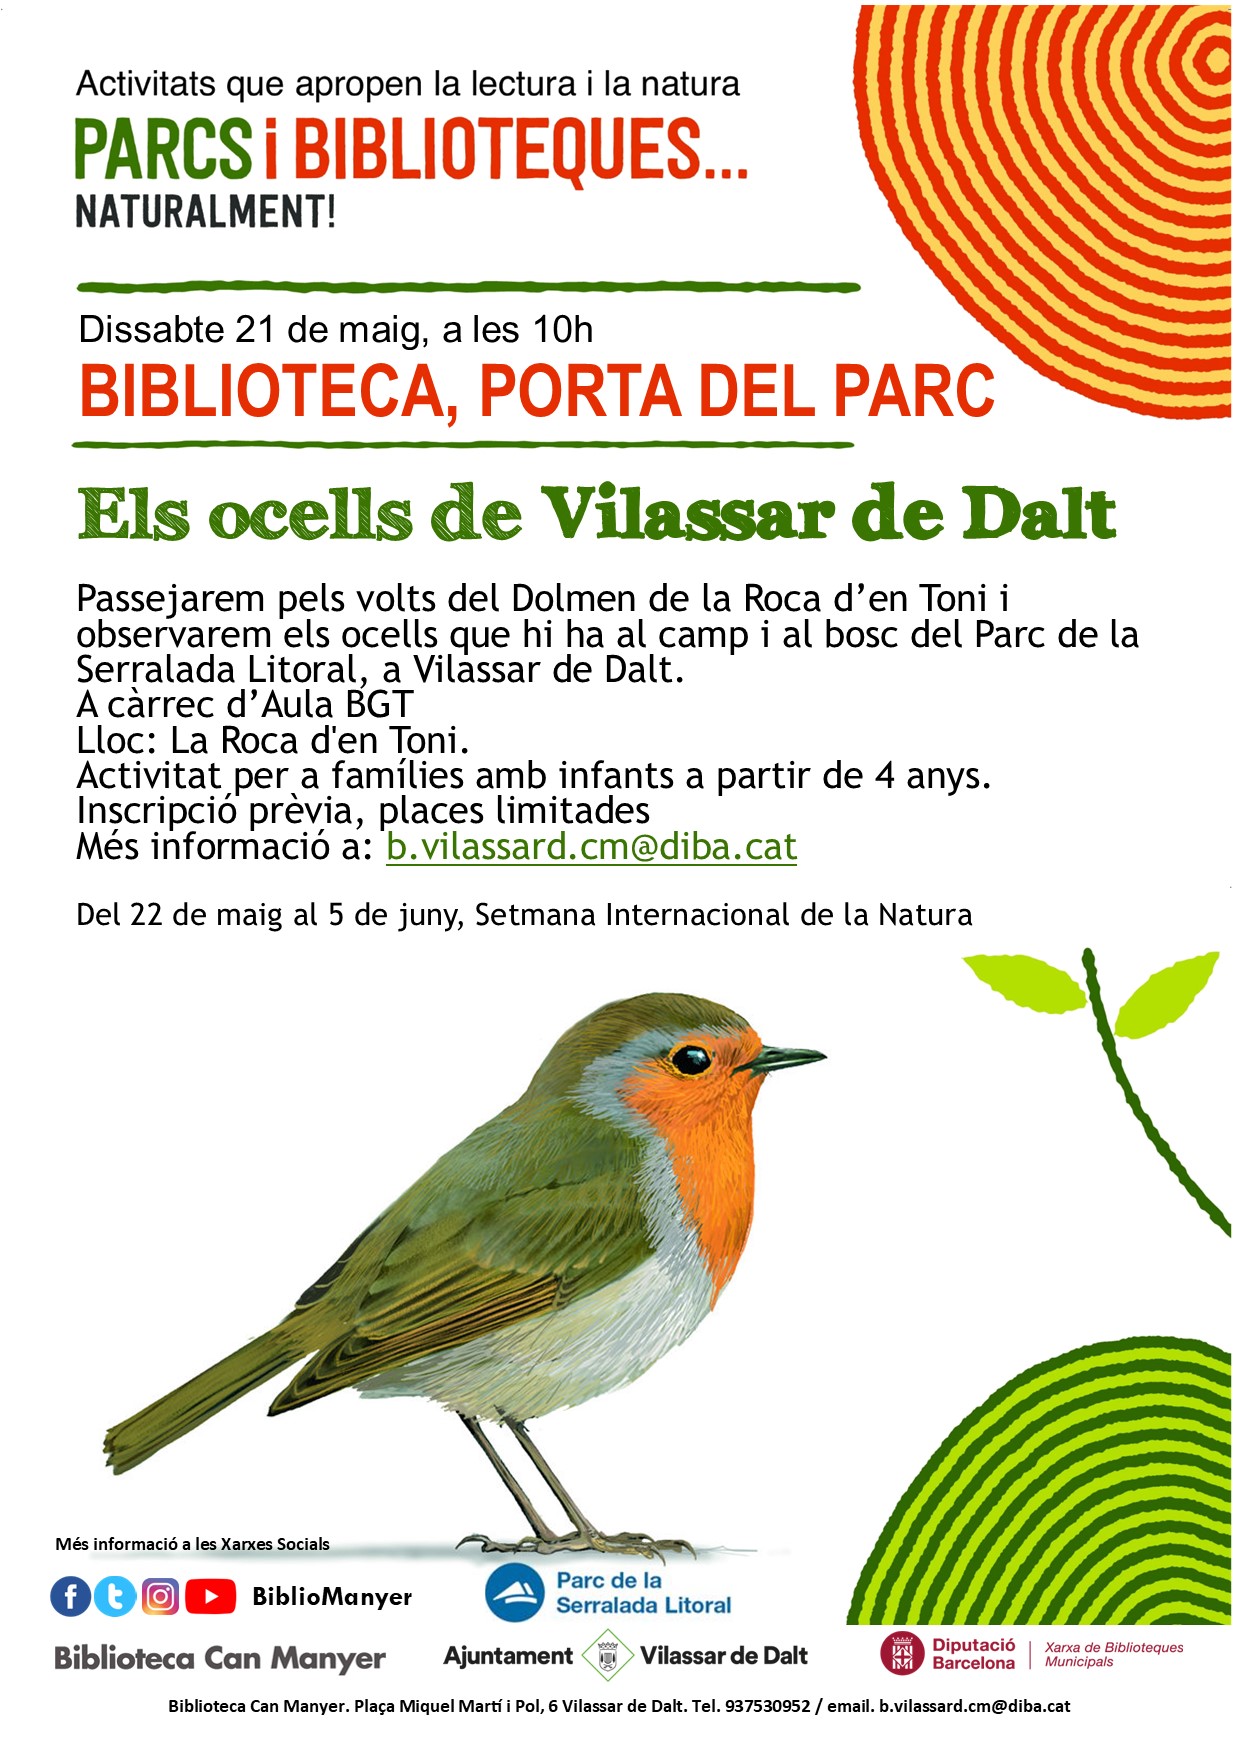 Biblioteca, porta al Parc: els ocells de Vilassar de Dalt